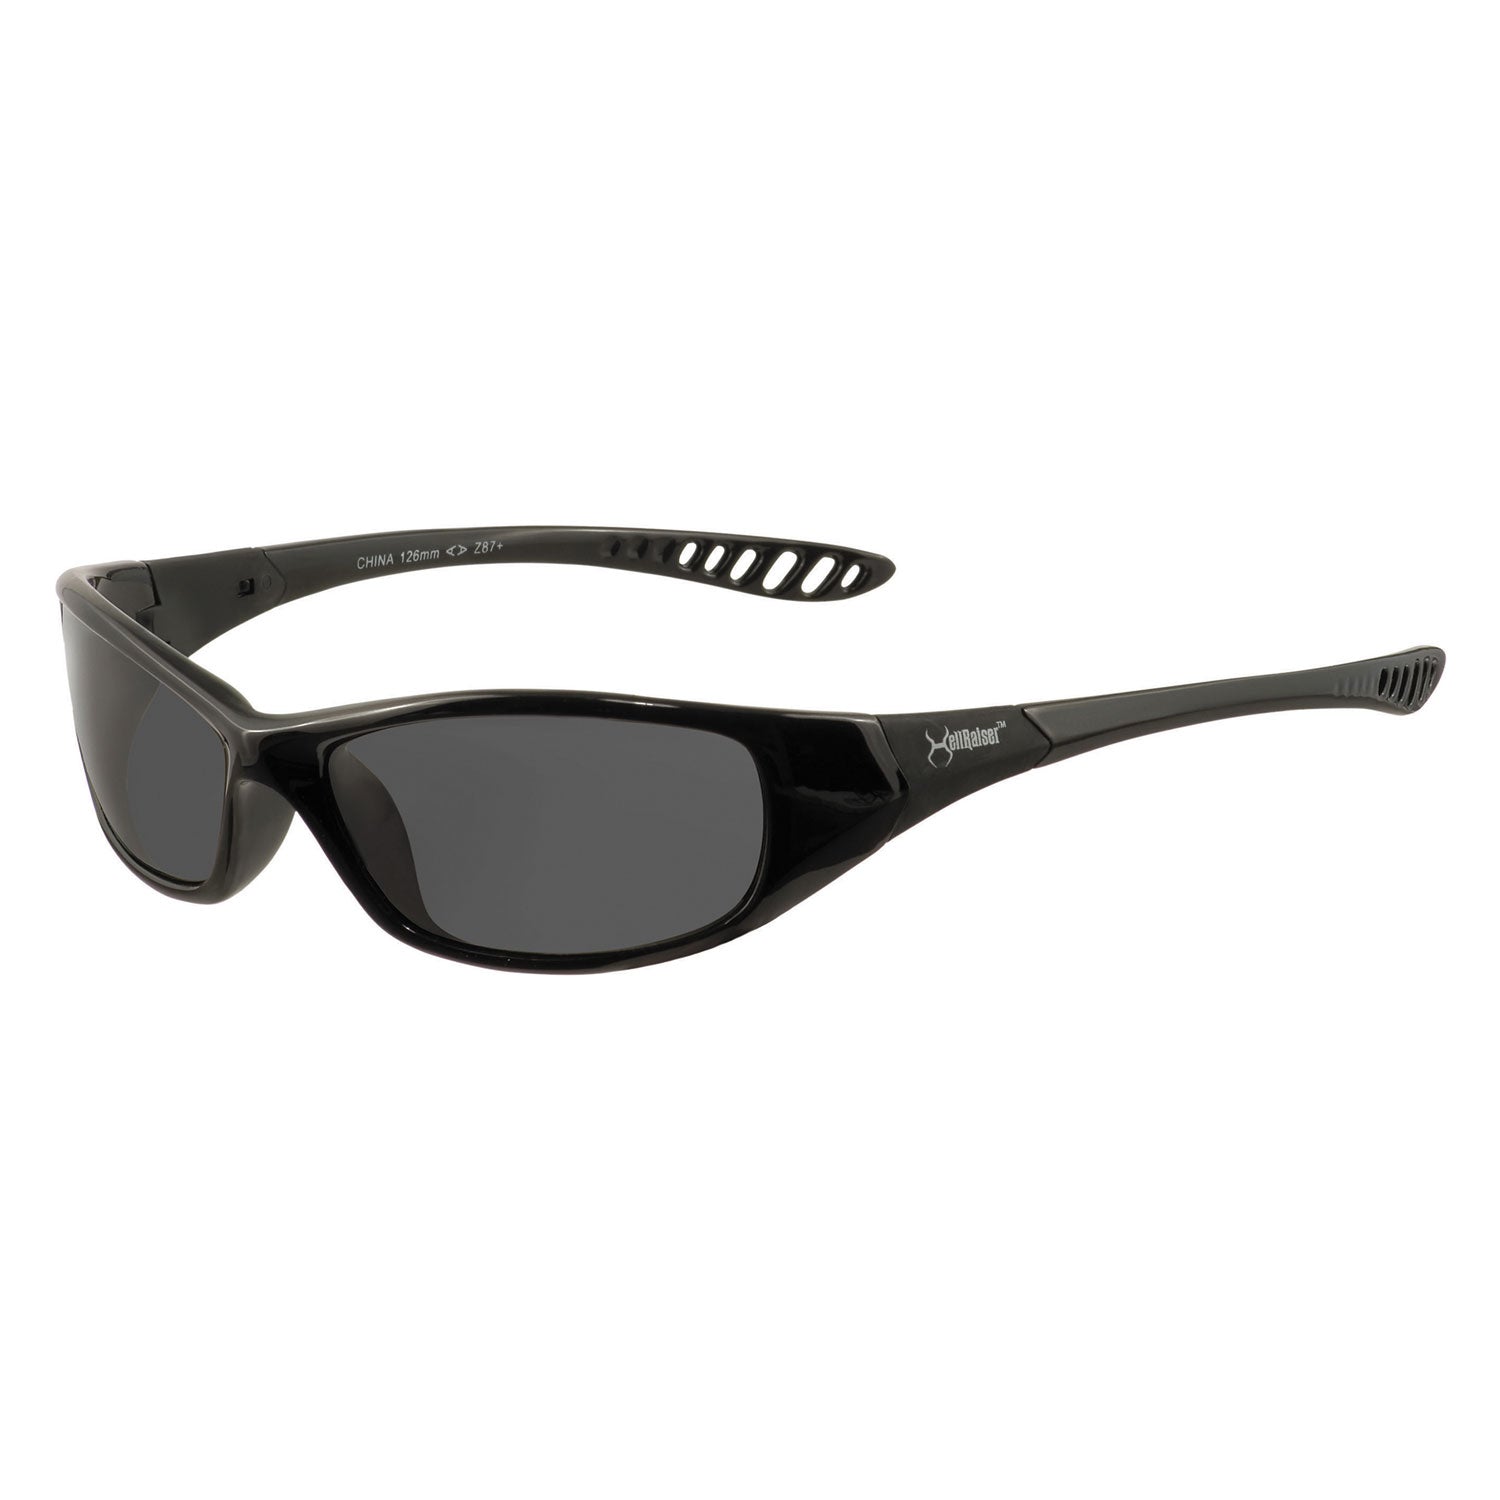 v40-hellraiser-safety-glasses-black-frame-smoke-lens_kcc25714 - 1